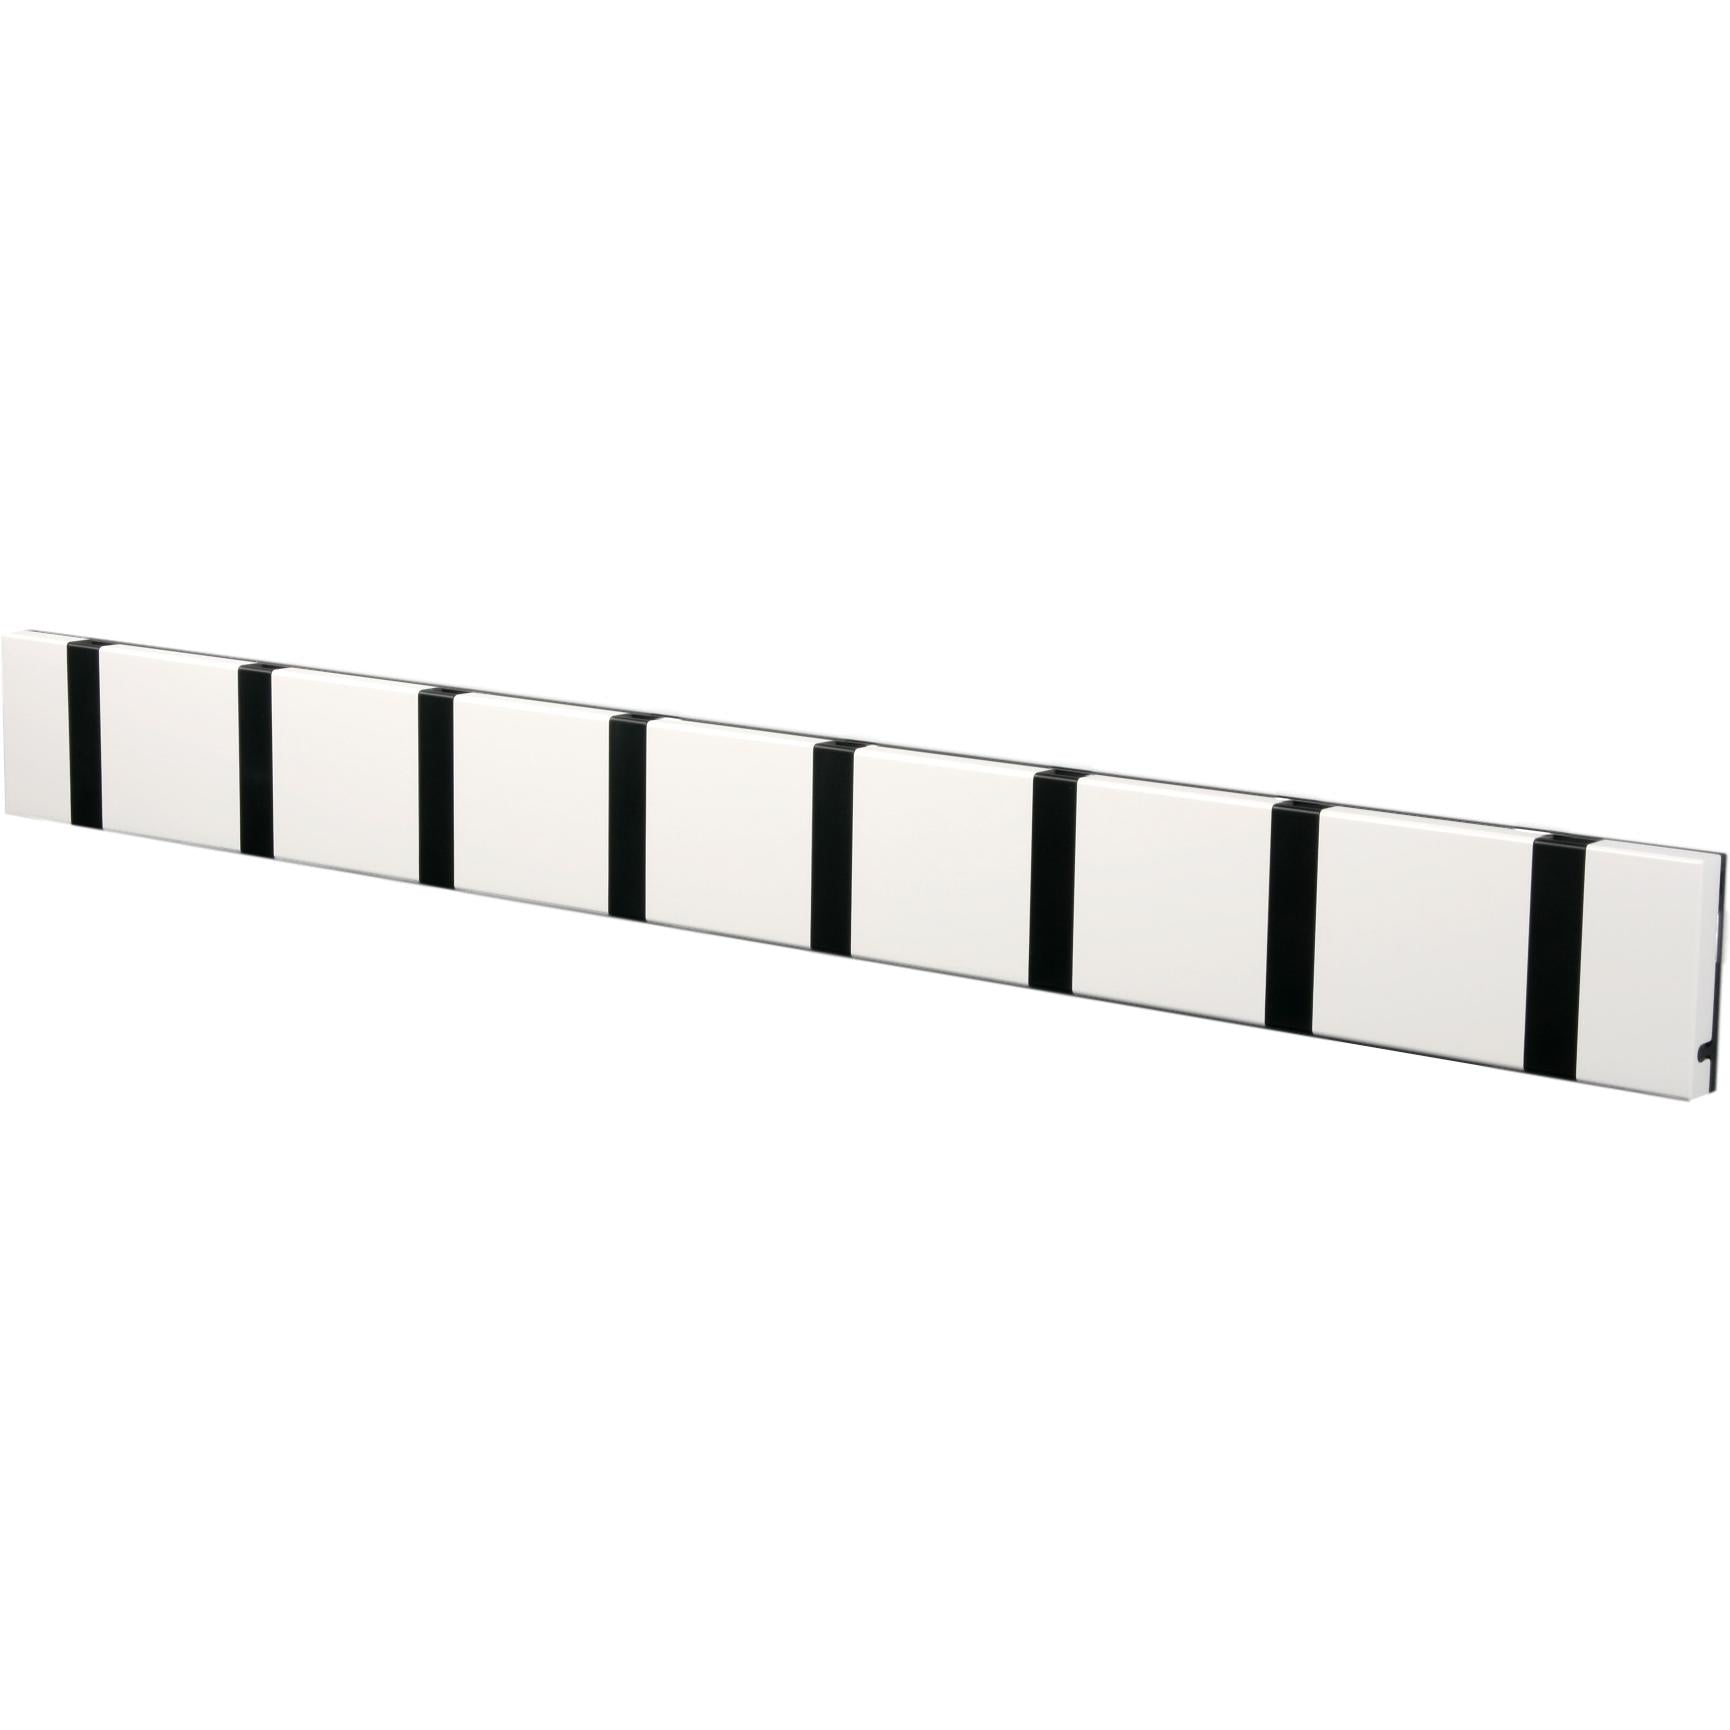 Loca Knax horizontale klautrek 8 haken, wit/zwart